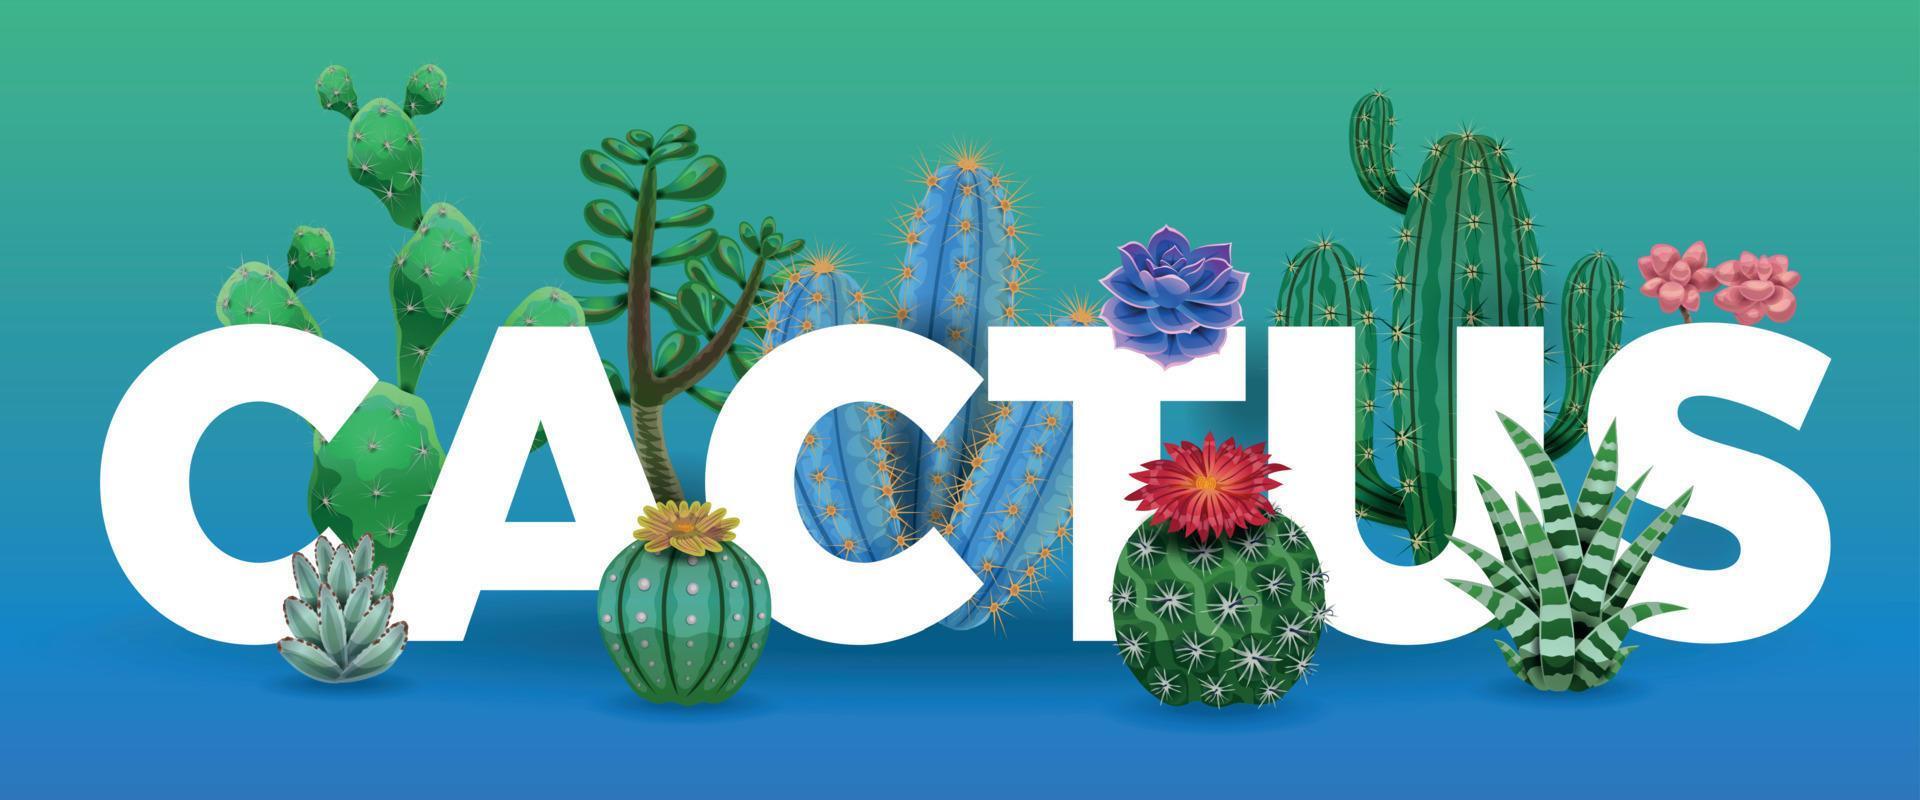 composición de letras grandes de cactus vector